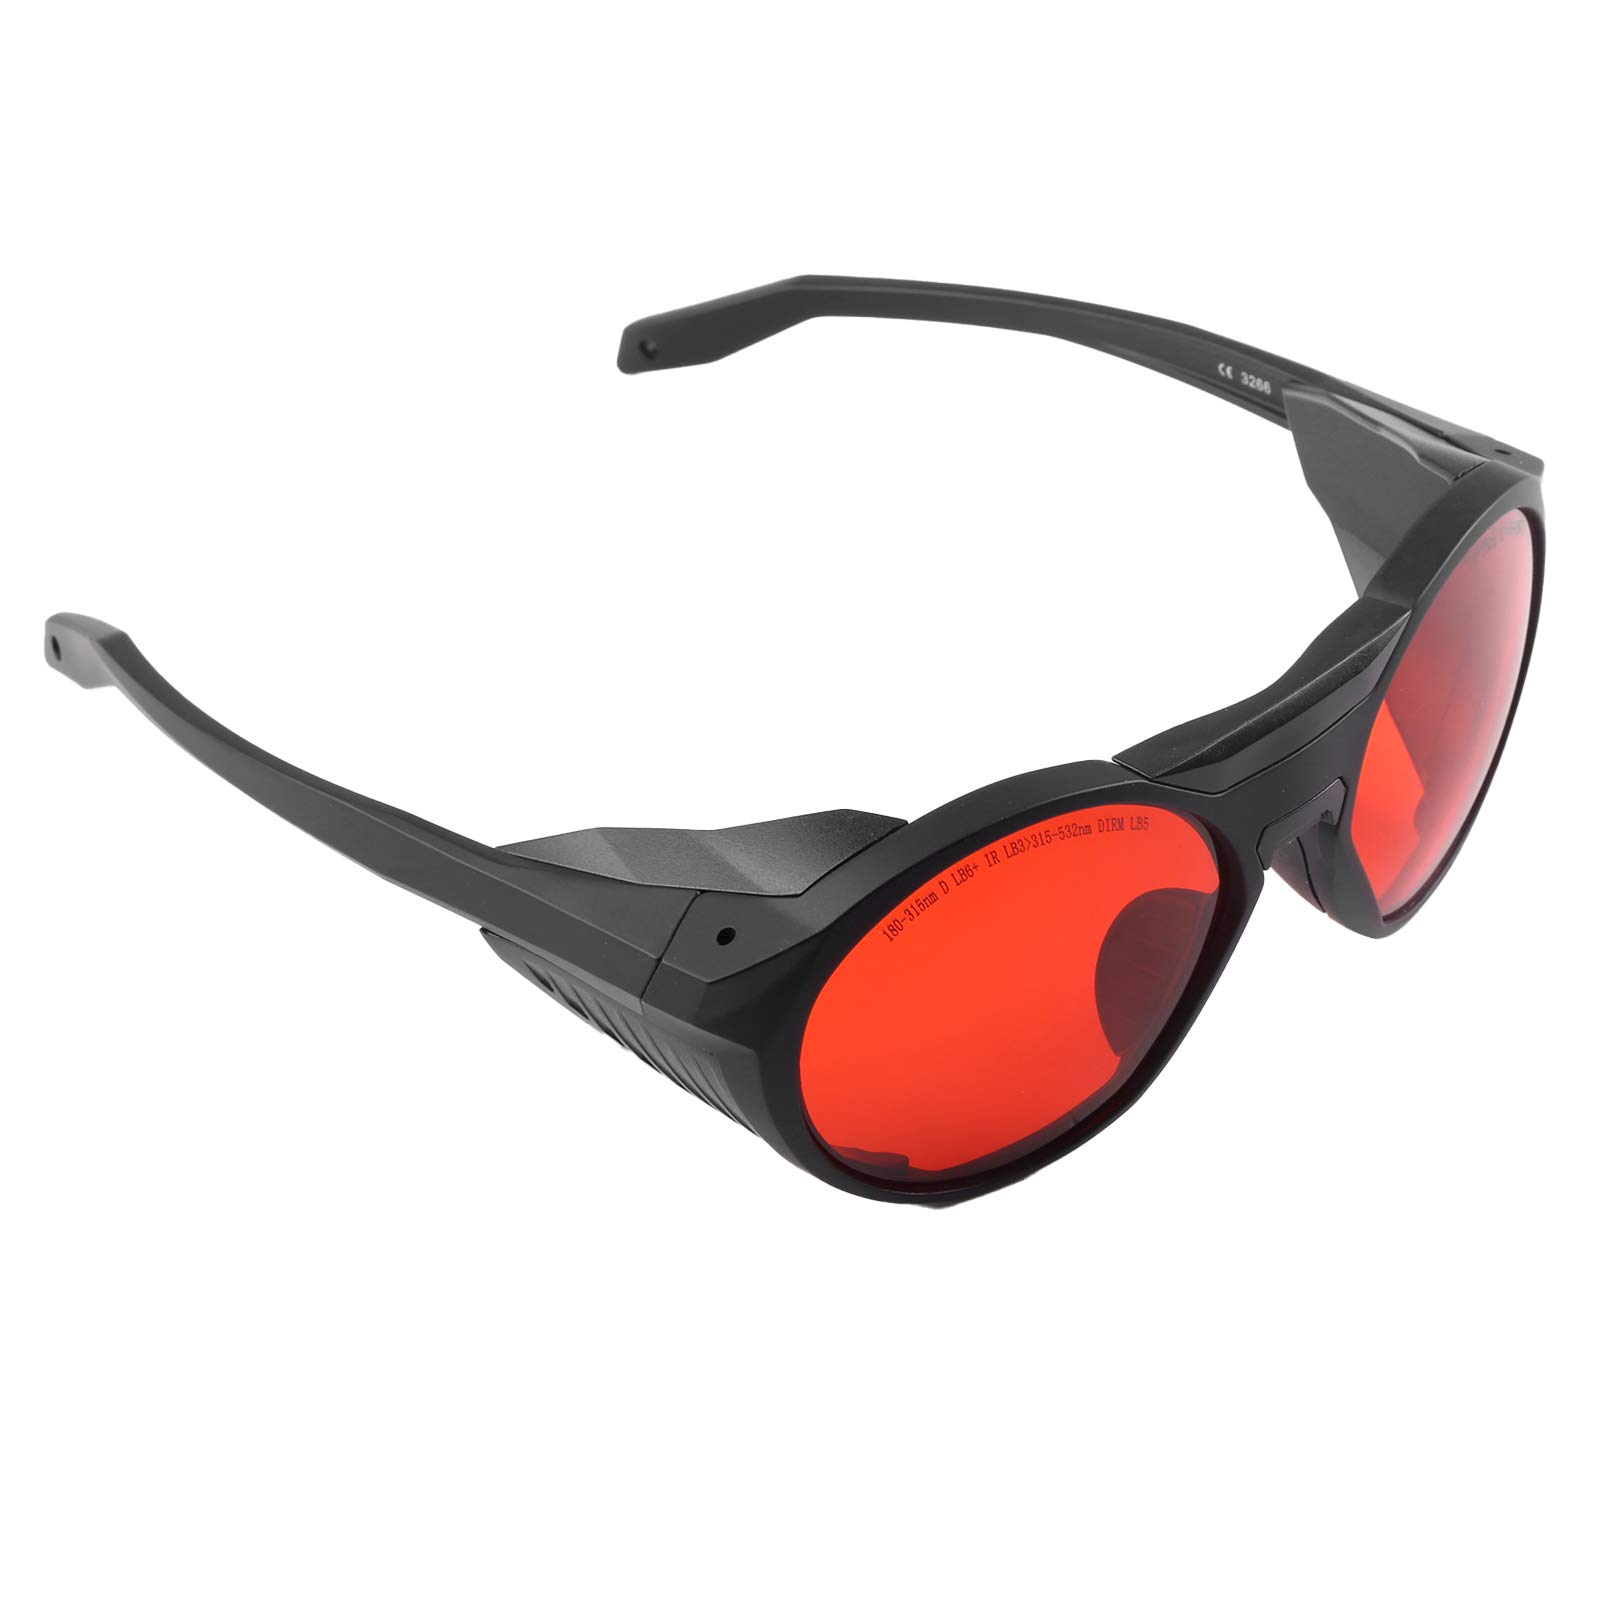 Schutzbrille, Laserschutzbrille OD6+ Lichtabsorption Hochwertiges PC-Material mit Brillentuch für Block UV Blau, Rot